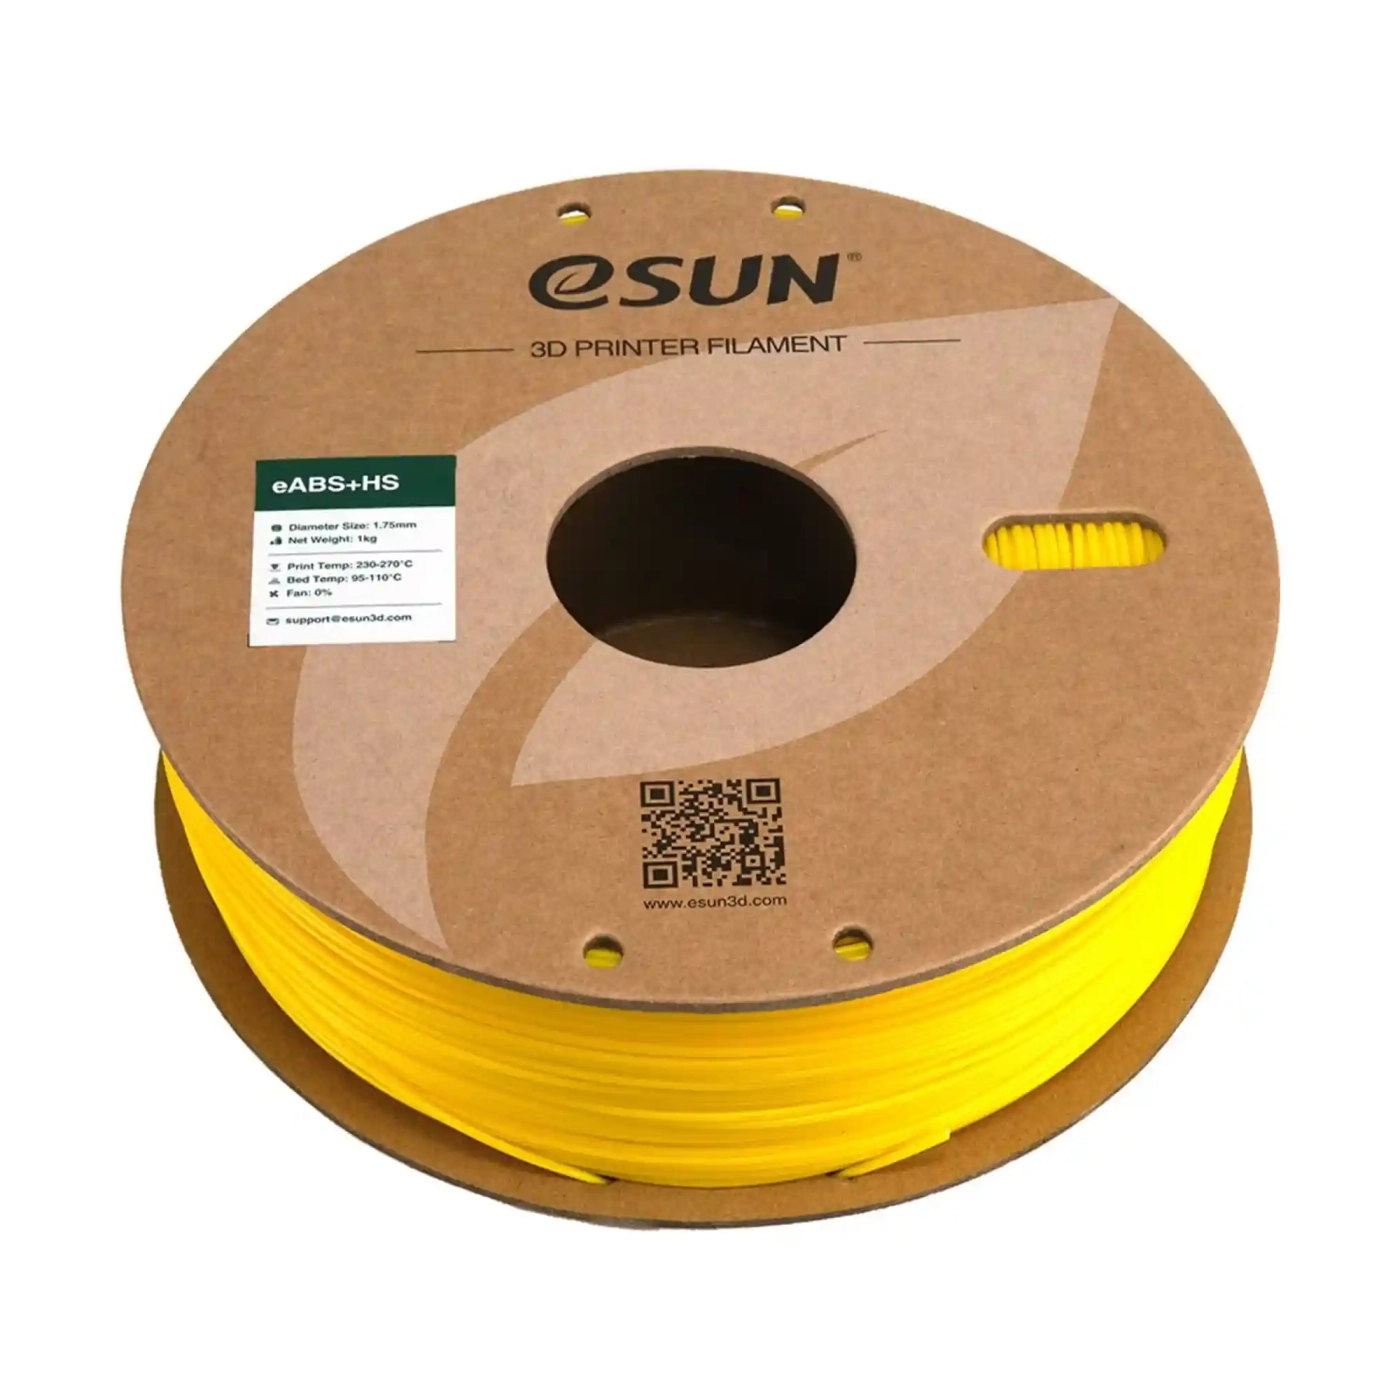 Купить eABS+HS Filament (пластик) для 3D принтера Esun 1кг, 1.75мм, желтый (eABS+HS-175Y1) - фото 3